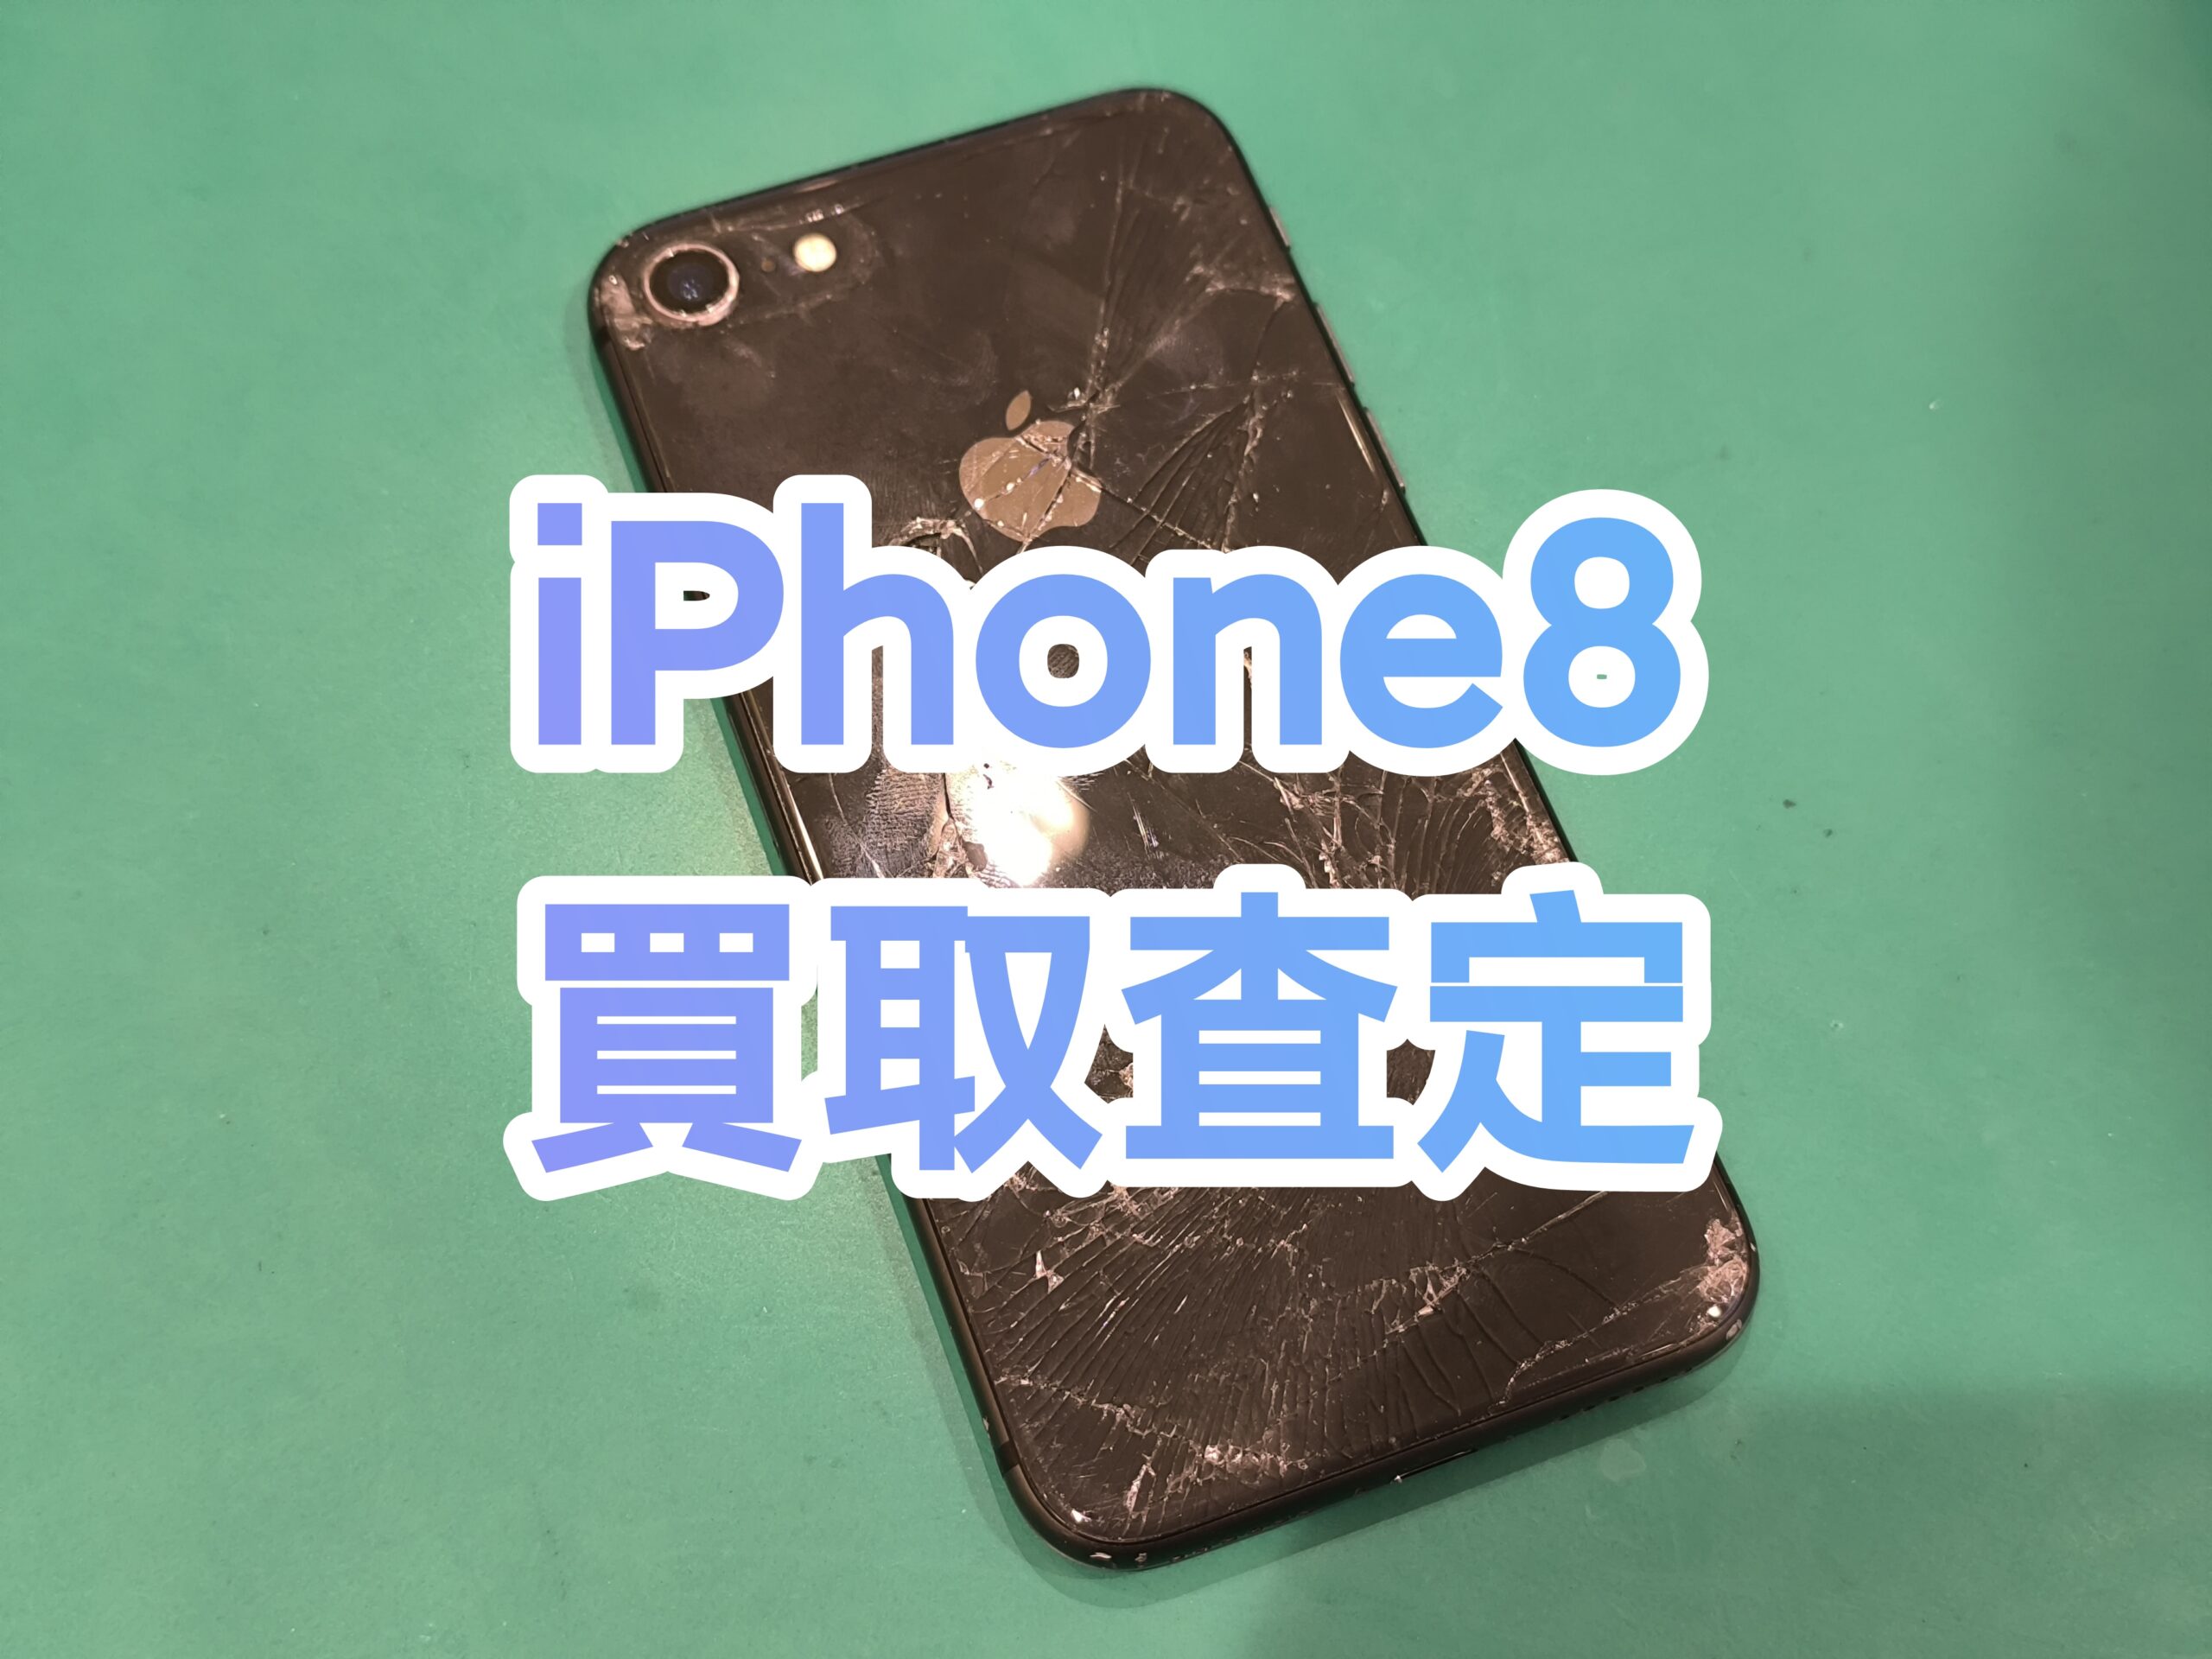 iPhone8 64GB au 利用制限〇 Jランク【戸塚モディ店】